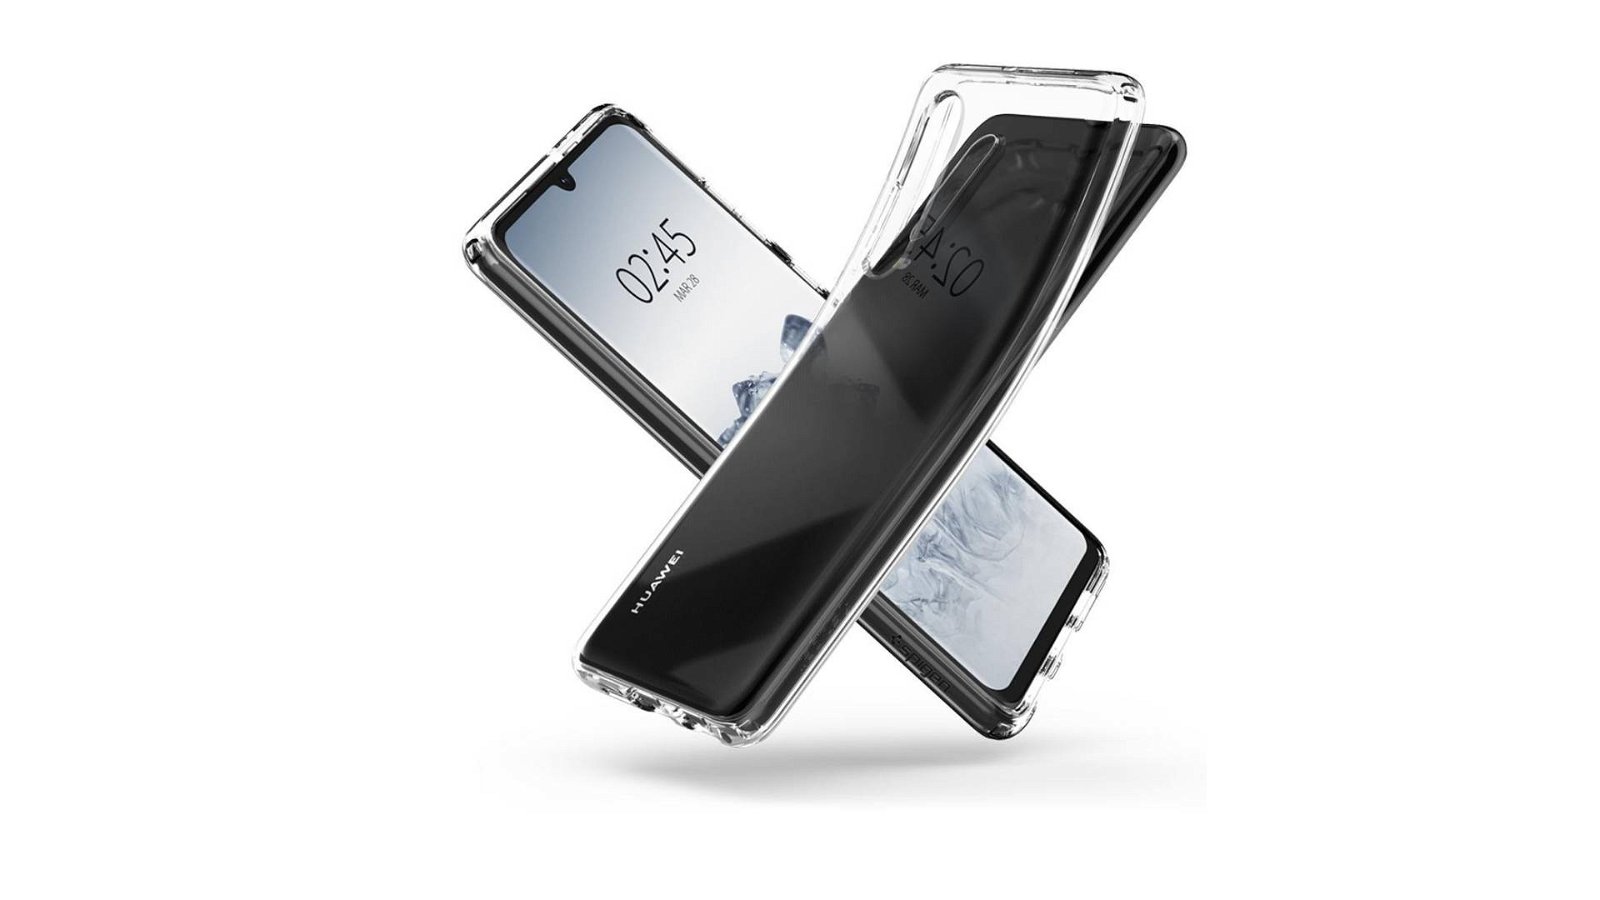 Immagine di Huawei P30 si mostra in incognito al Mobile World Congress 2019